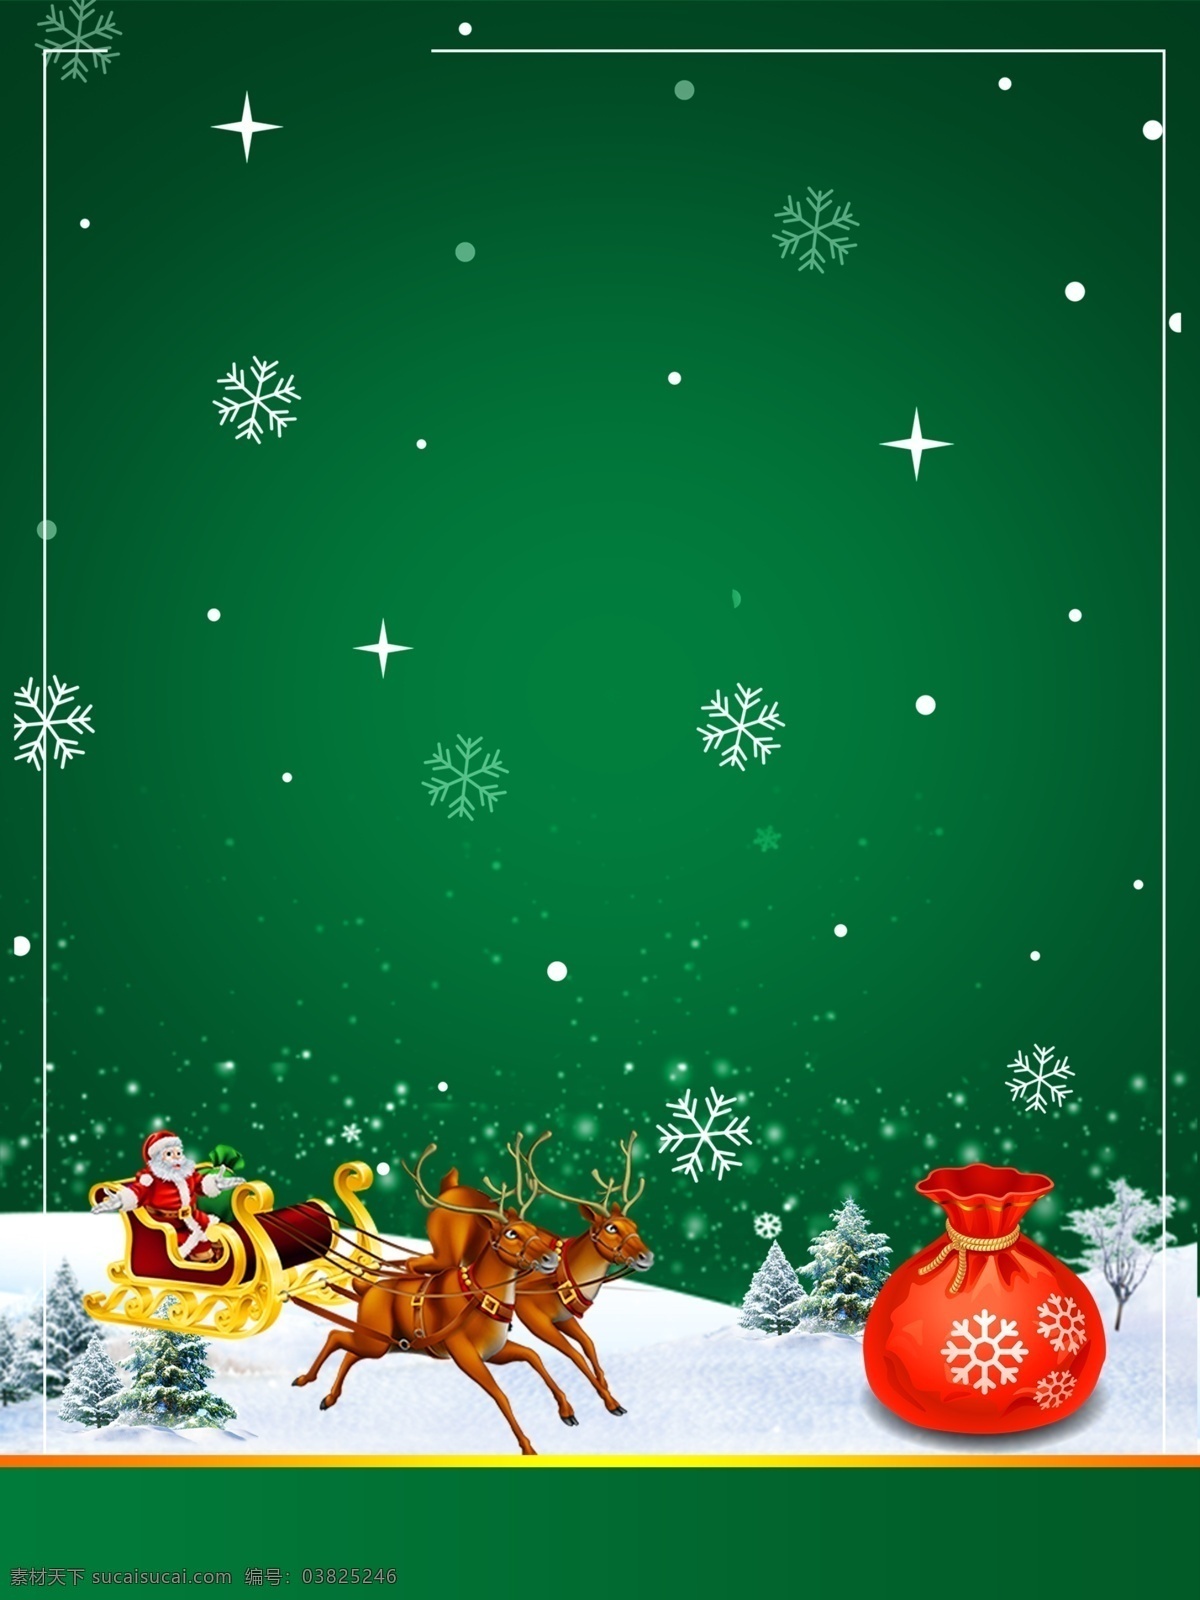 圣诞 促销 宣传 背景 圣诞树 礼物 蝴蝶结 雪花 浪漫 雪地 雪人 圣诞球 圣诞挂饰